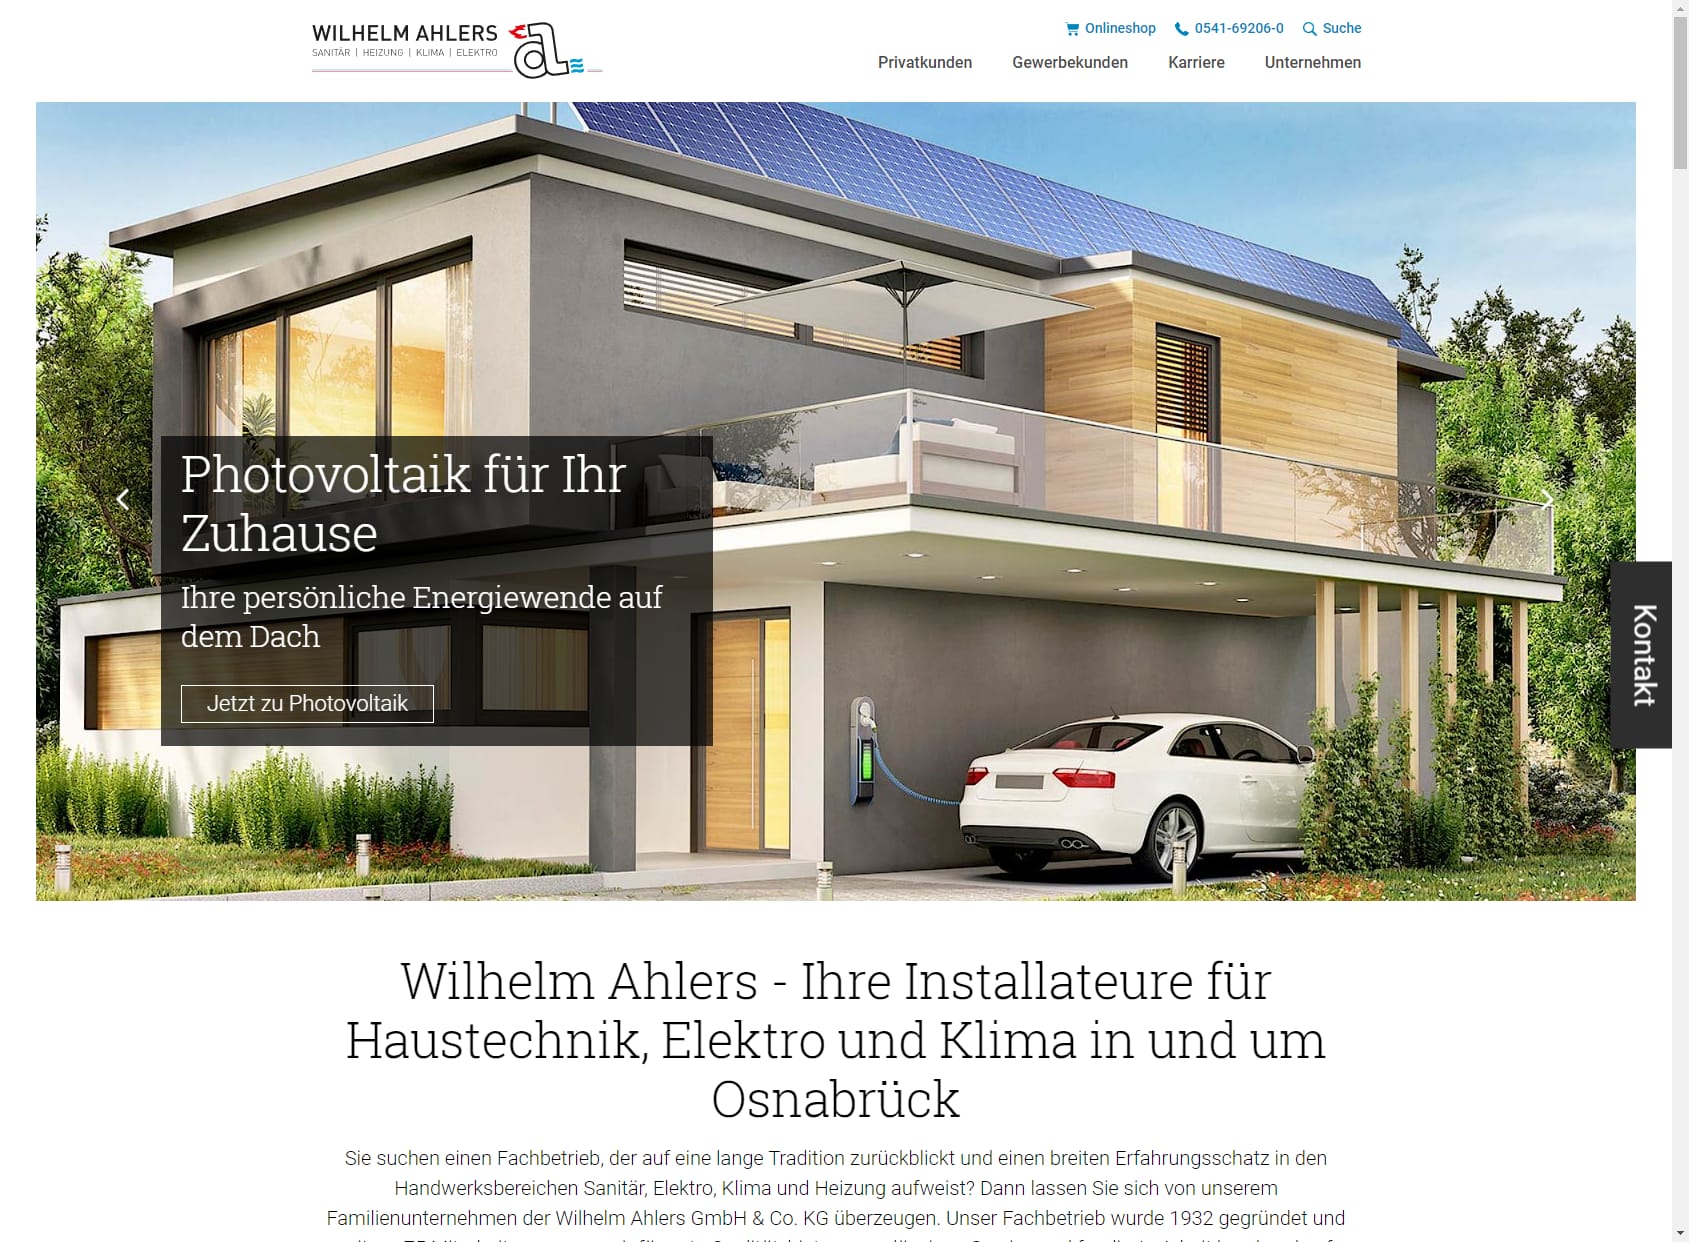 Wilhelm Ahlers GmbH & Co. KG